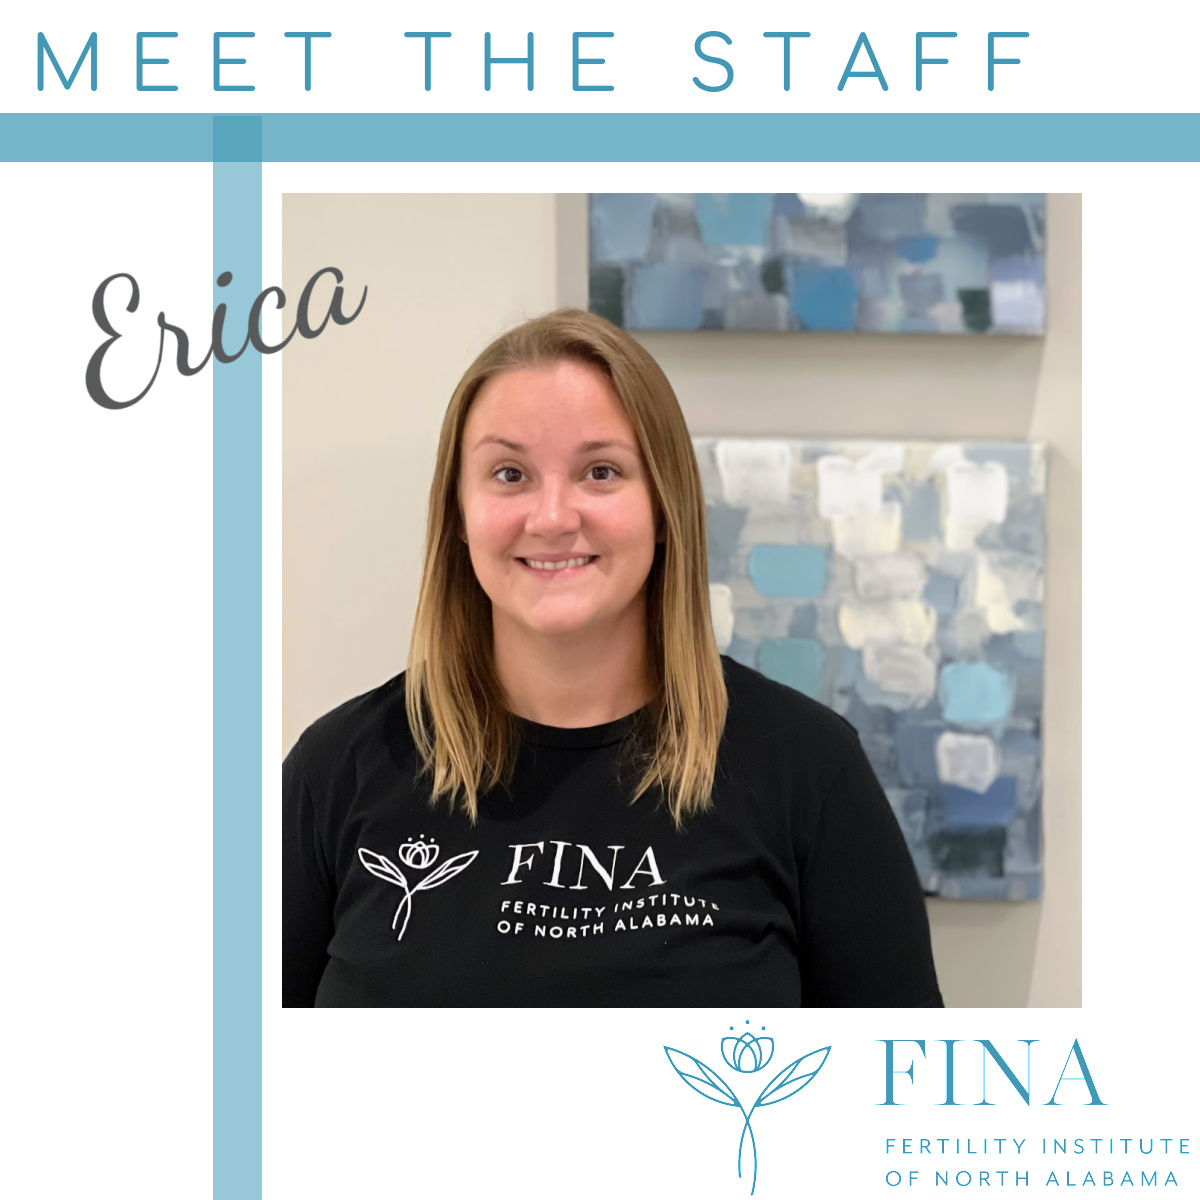 Meet Erica!